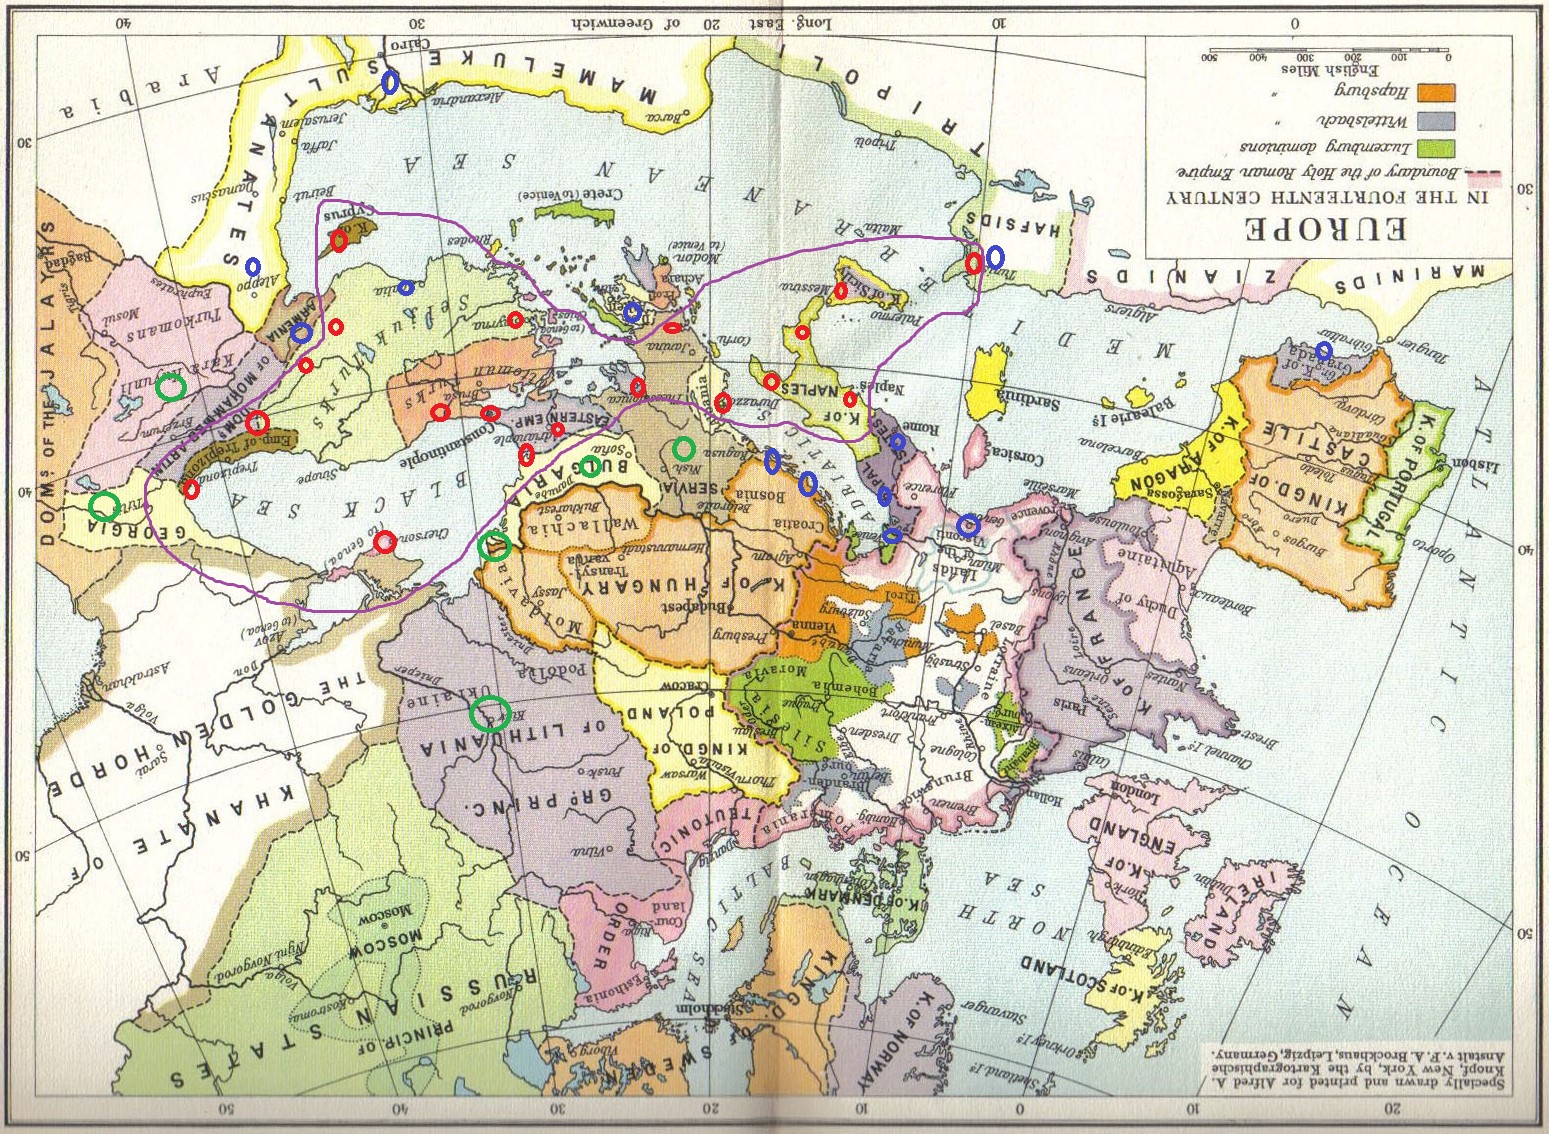 Европа 13 14 века. Карта средневековой Европы 14 век. Карта Европы 14-15 века. Карта средневековой Европы 15 века. Карта Европы средние века 14 века.